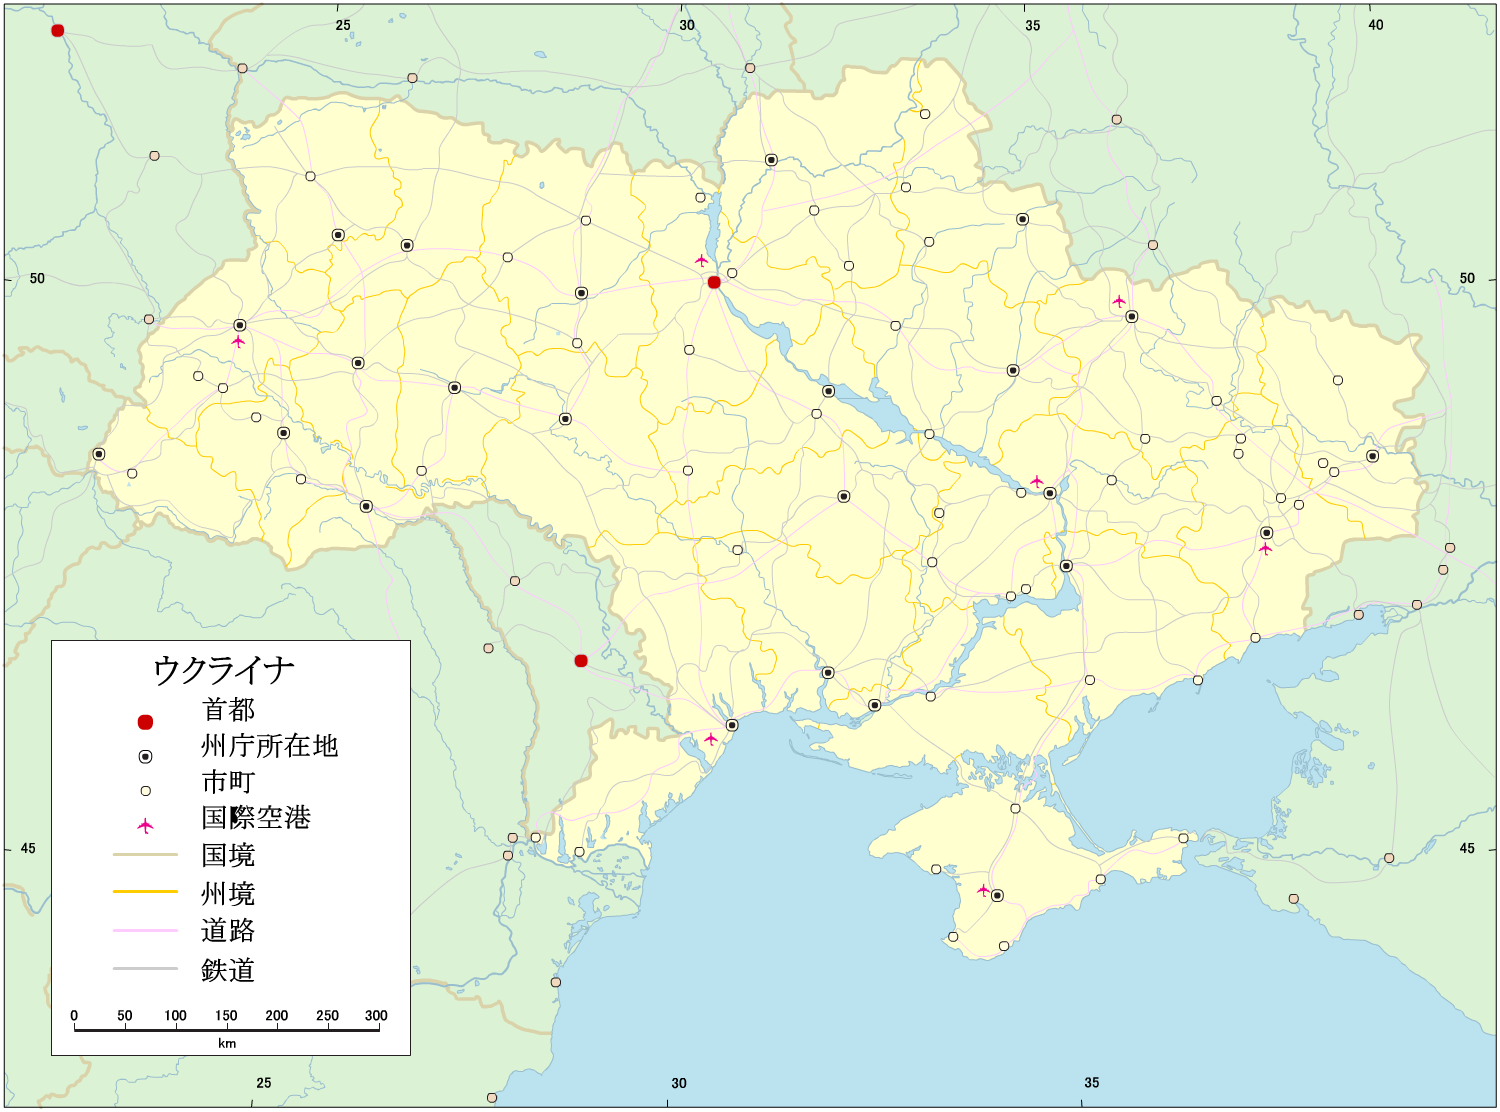 ウクライナ、ベラルーシ、モルドバ、バルト三国のカラー道路地図(90's ...